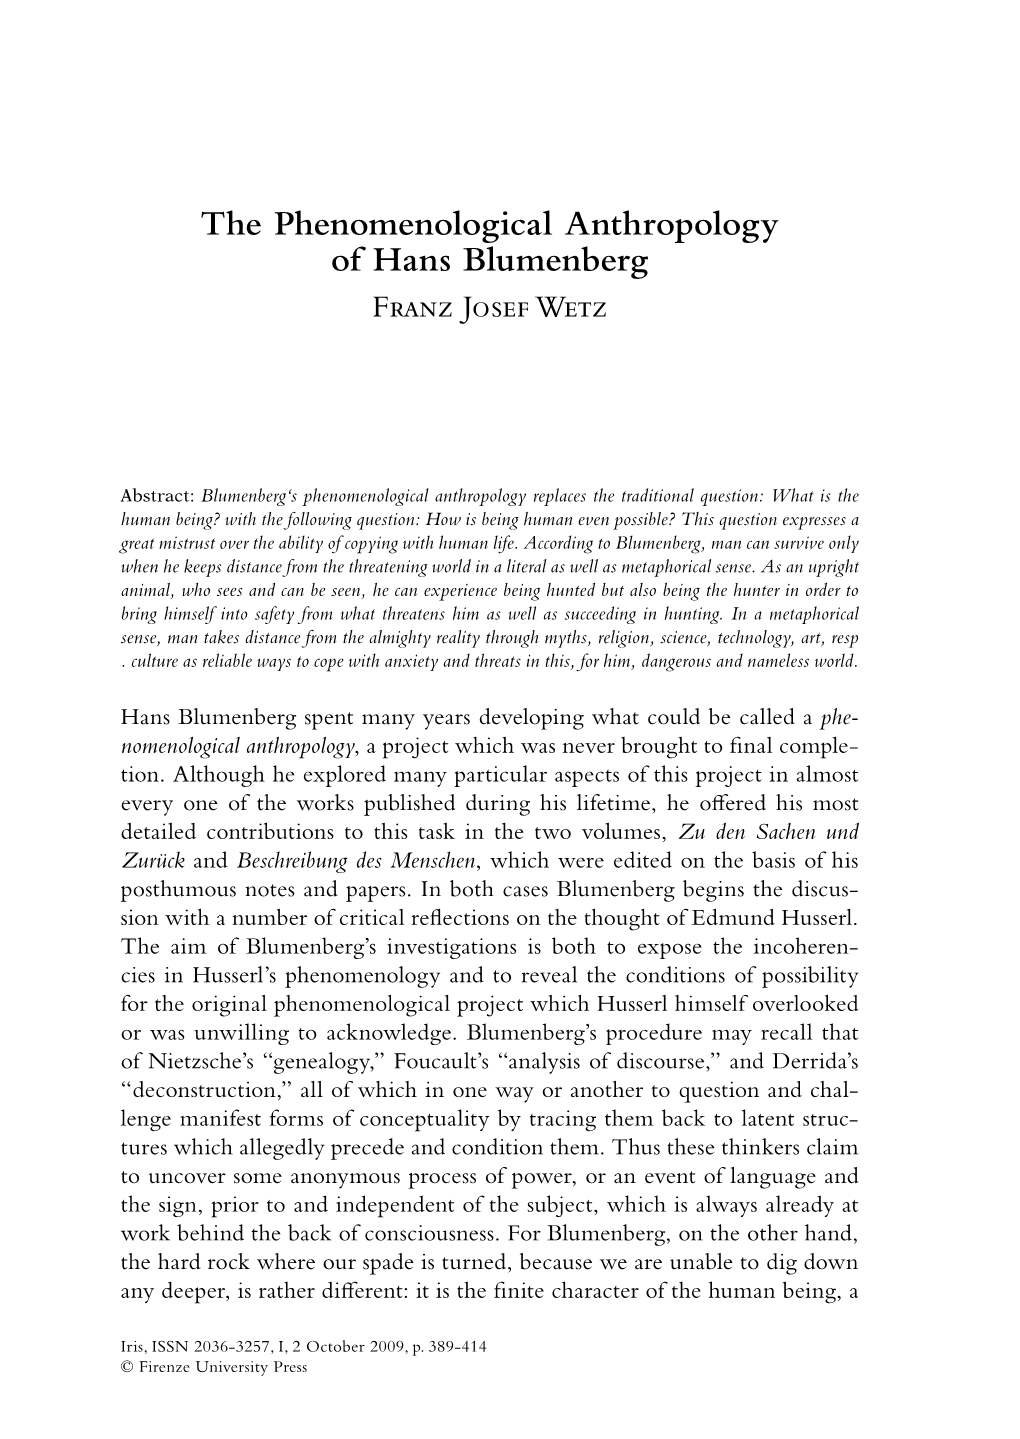 The Phenomenological Anthropology of Hans Blumenberg Franz Josef Wetz